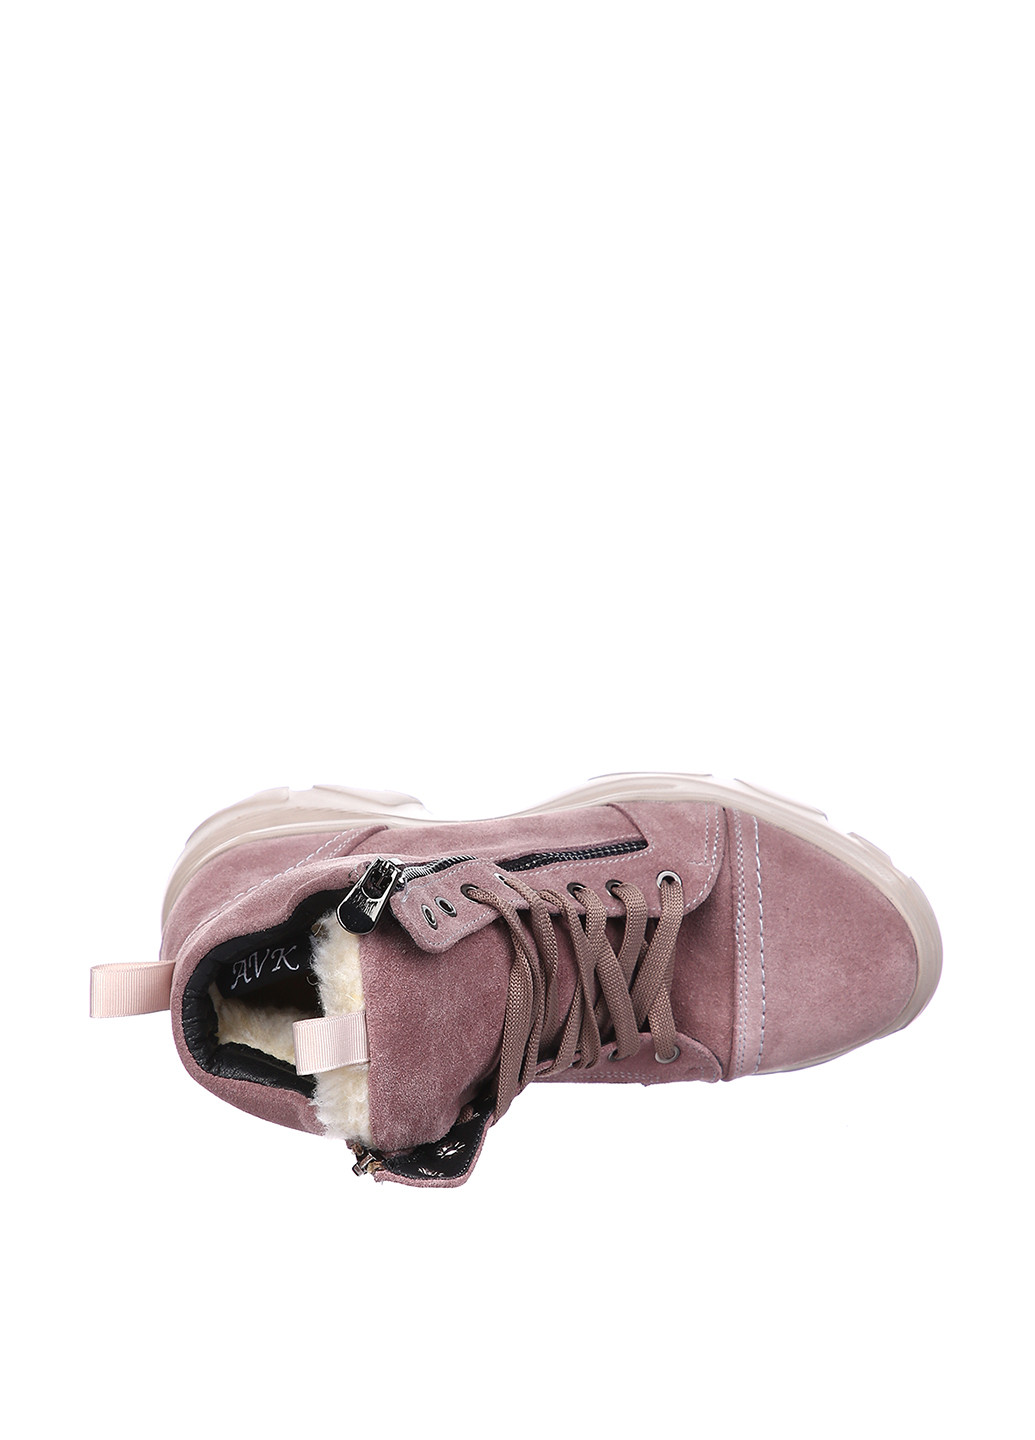 Зимние ботинки Avk Style со шнуровкой из натуральной замши